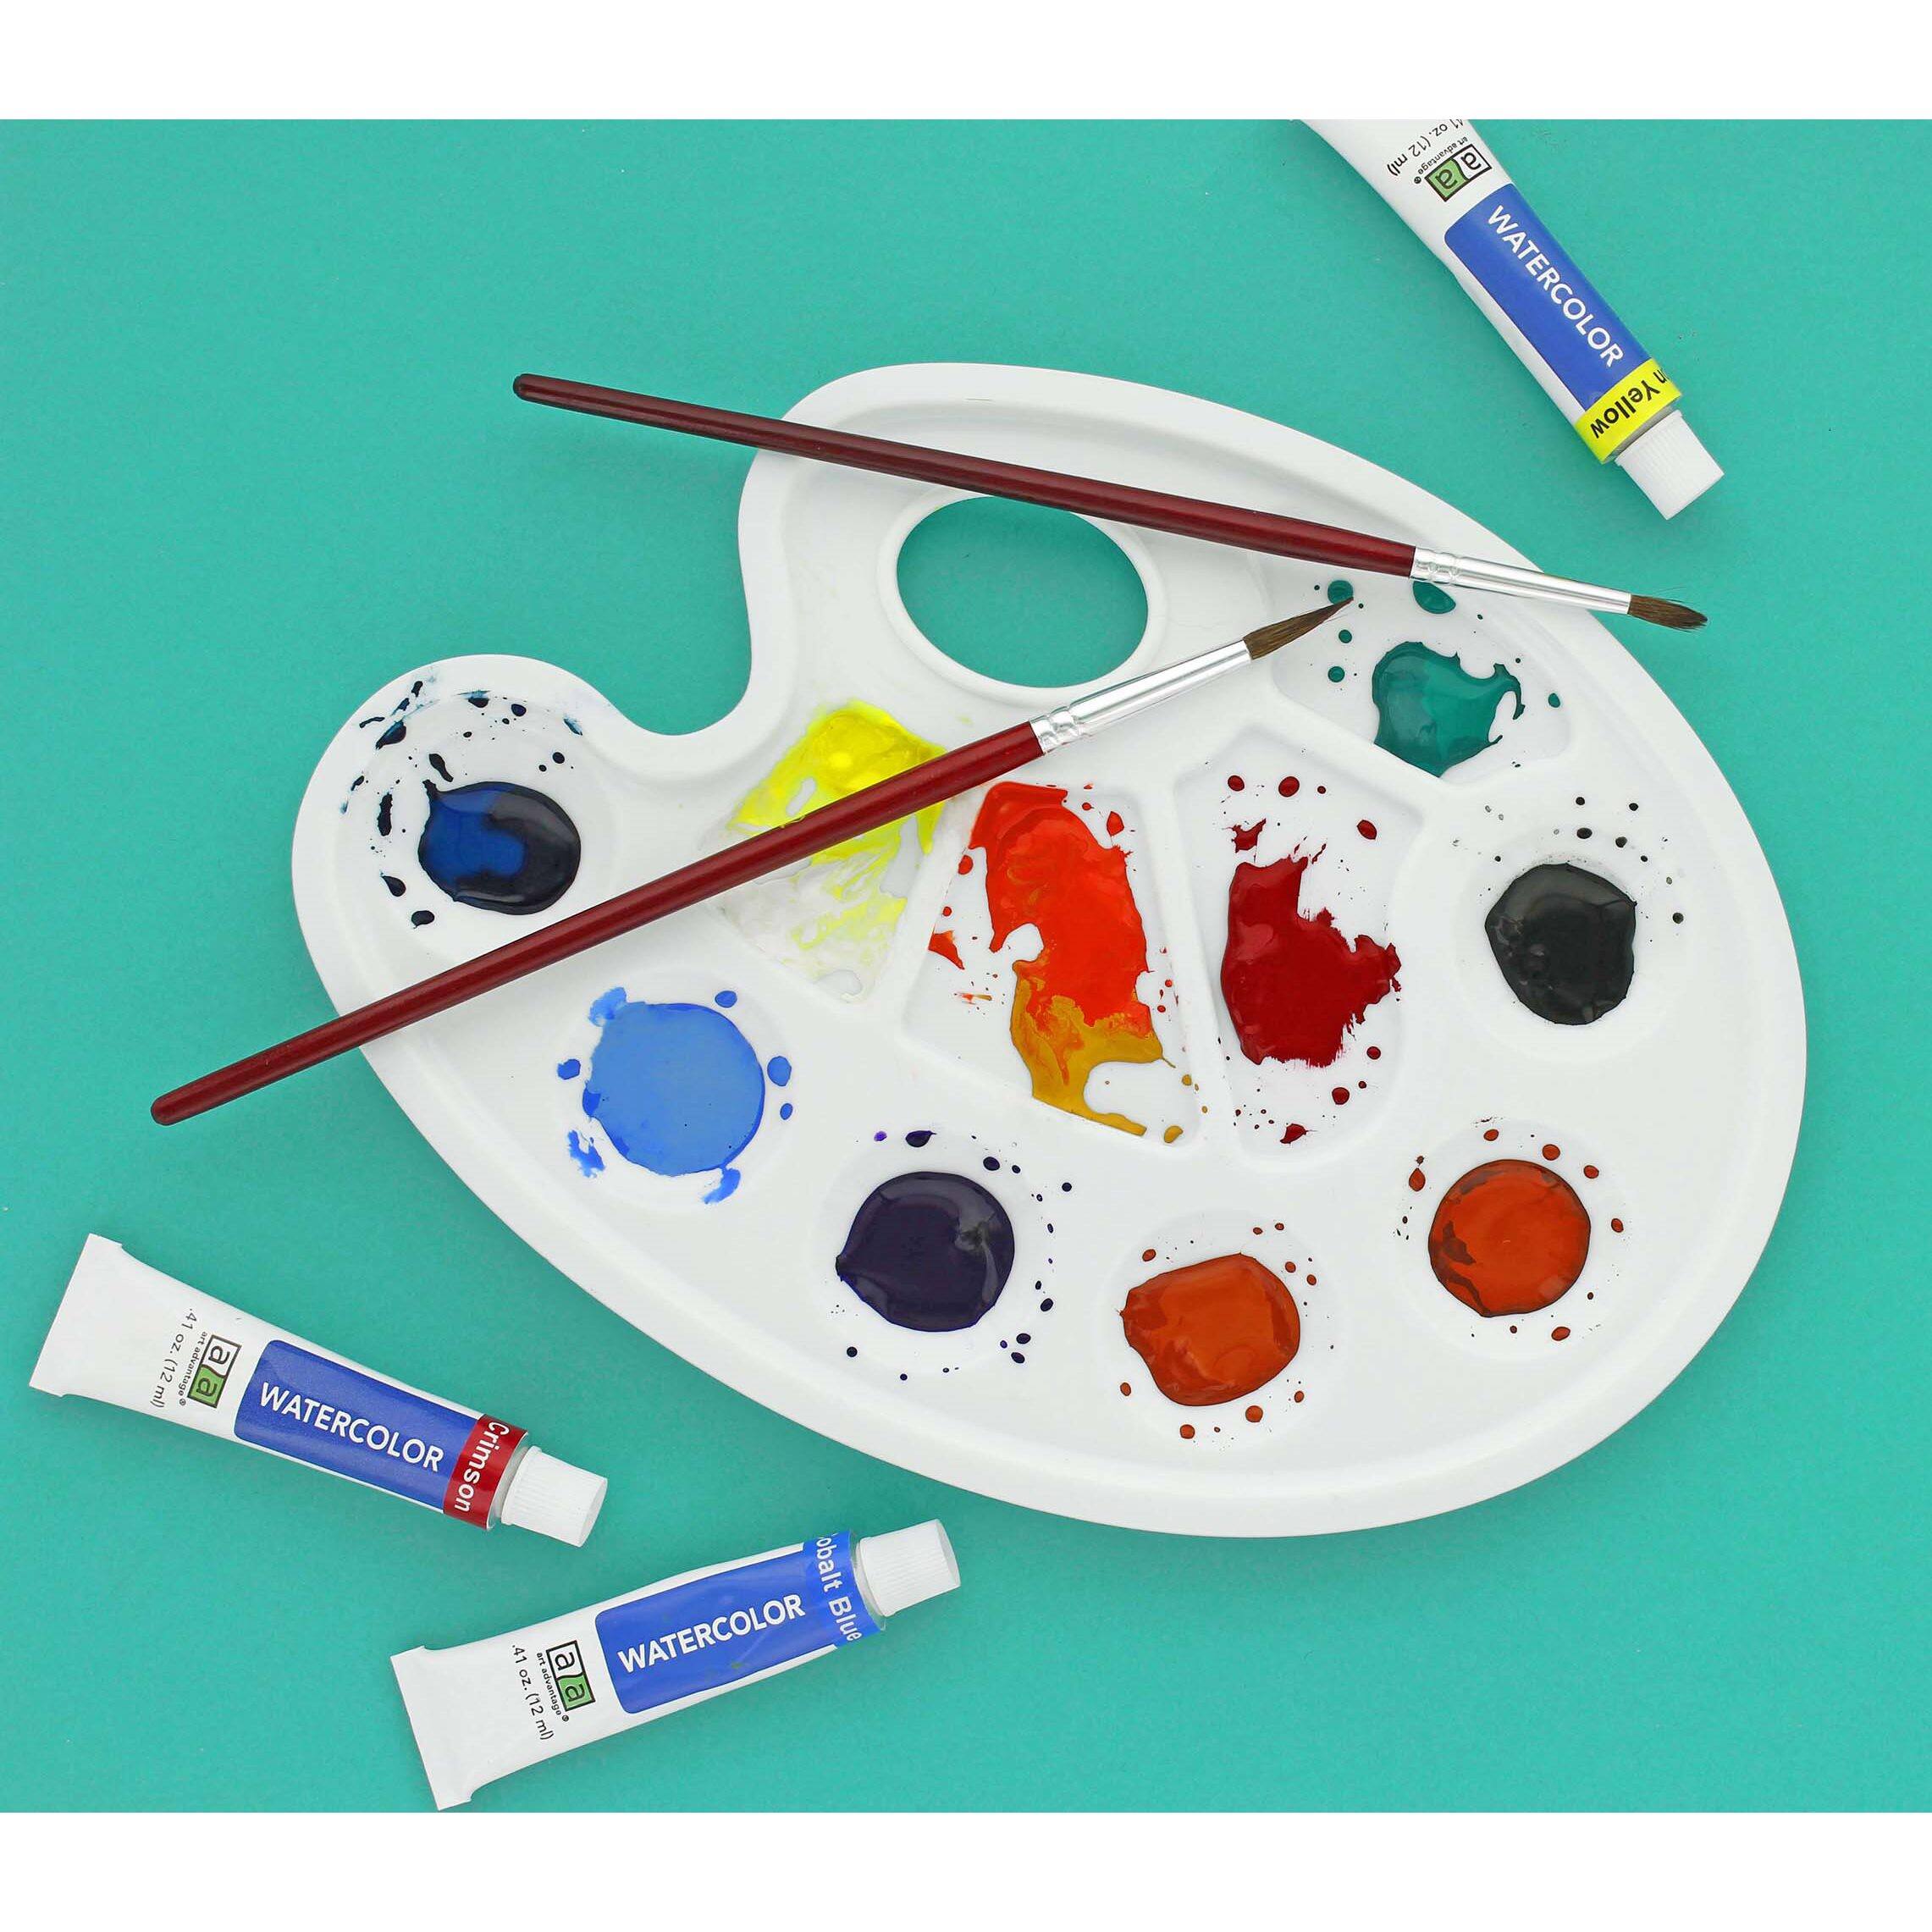 Art Advantage&#xAE; 12 Color Watercolor Paint Set